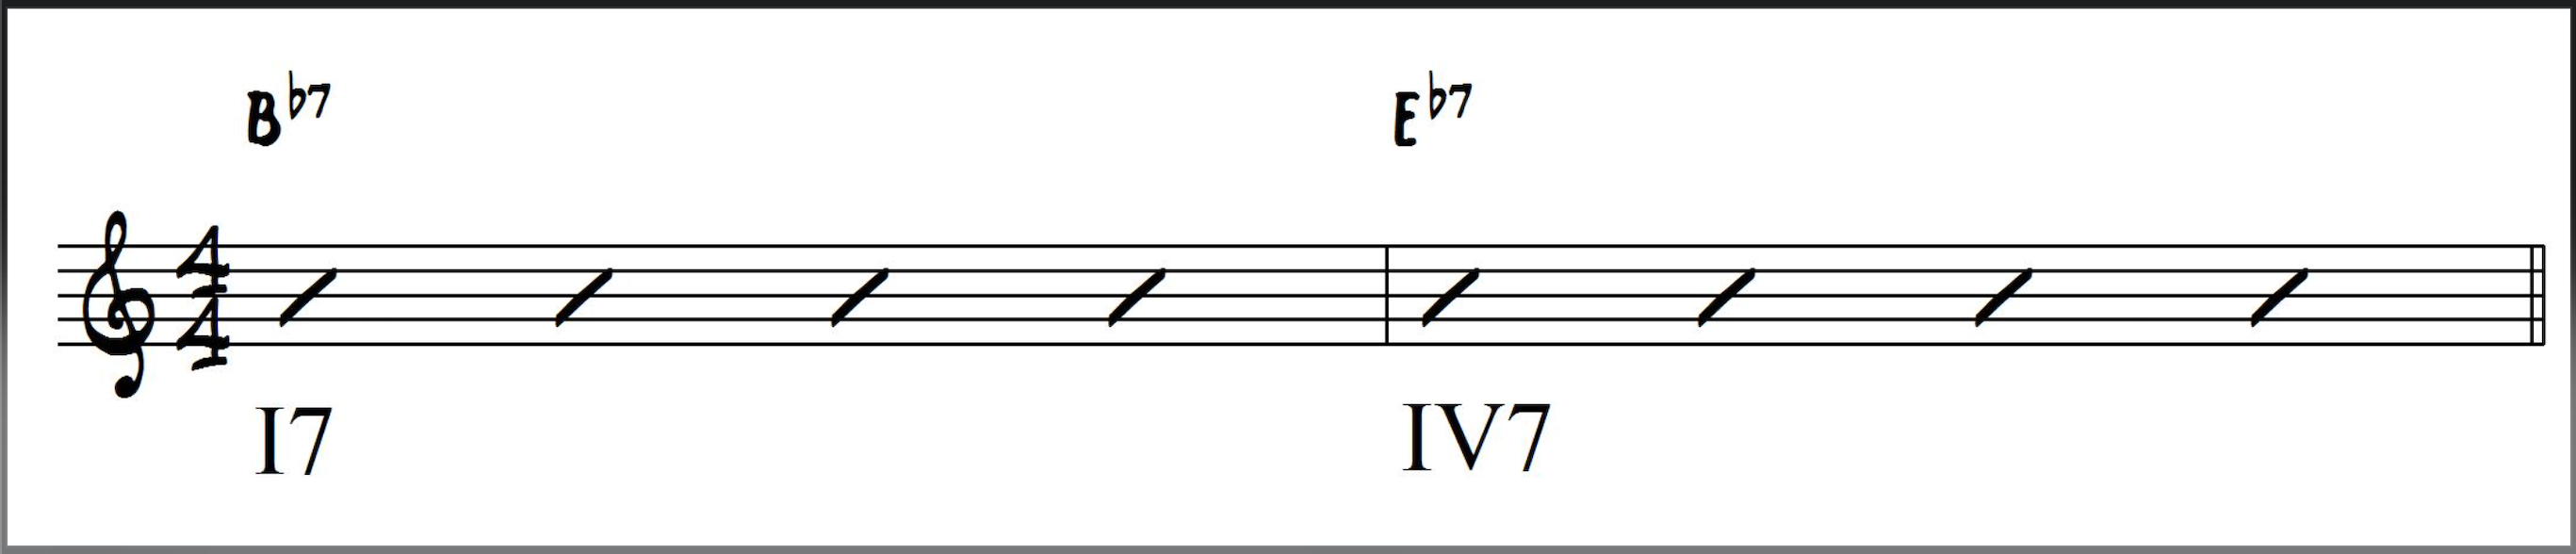 I7 - VI7 in Bb